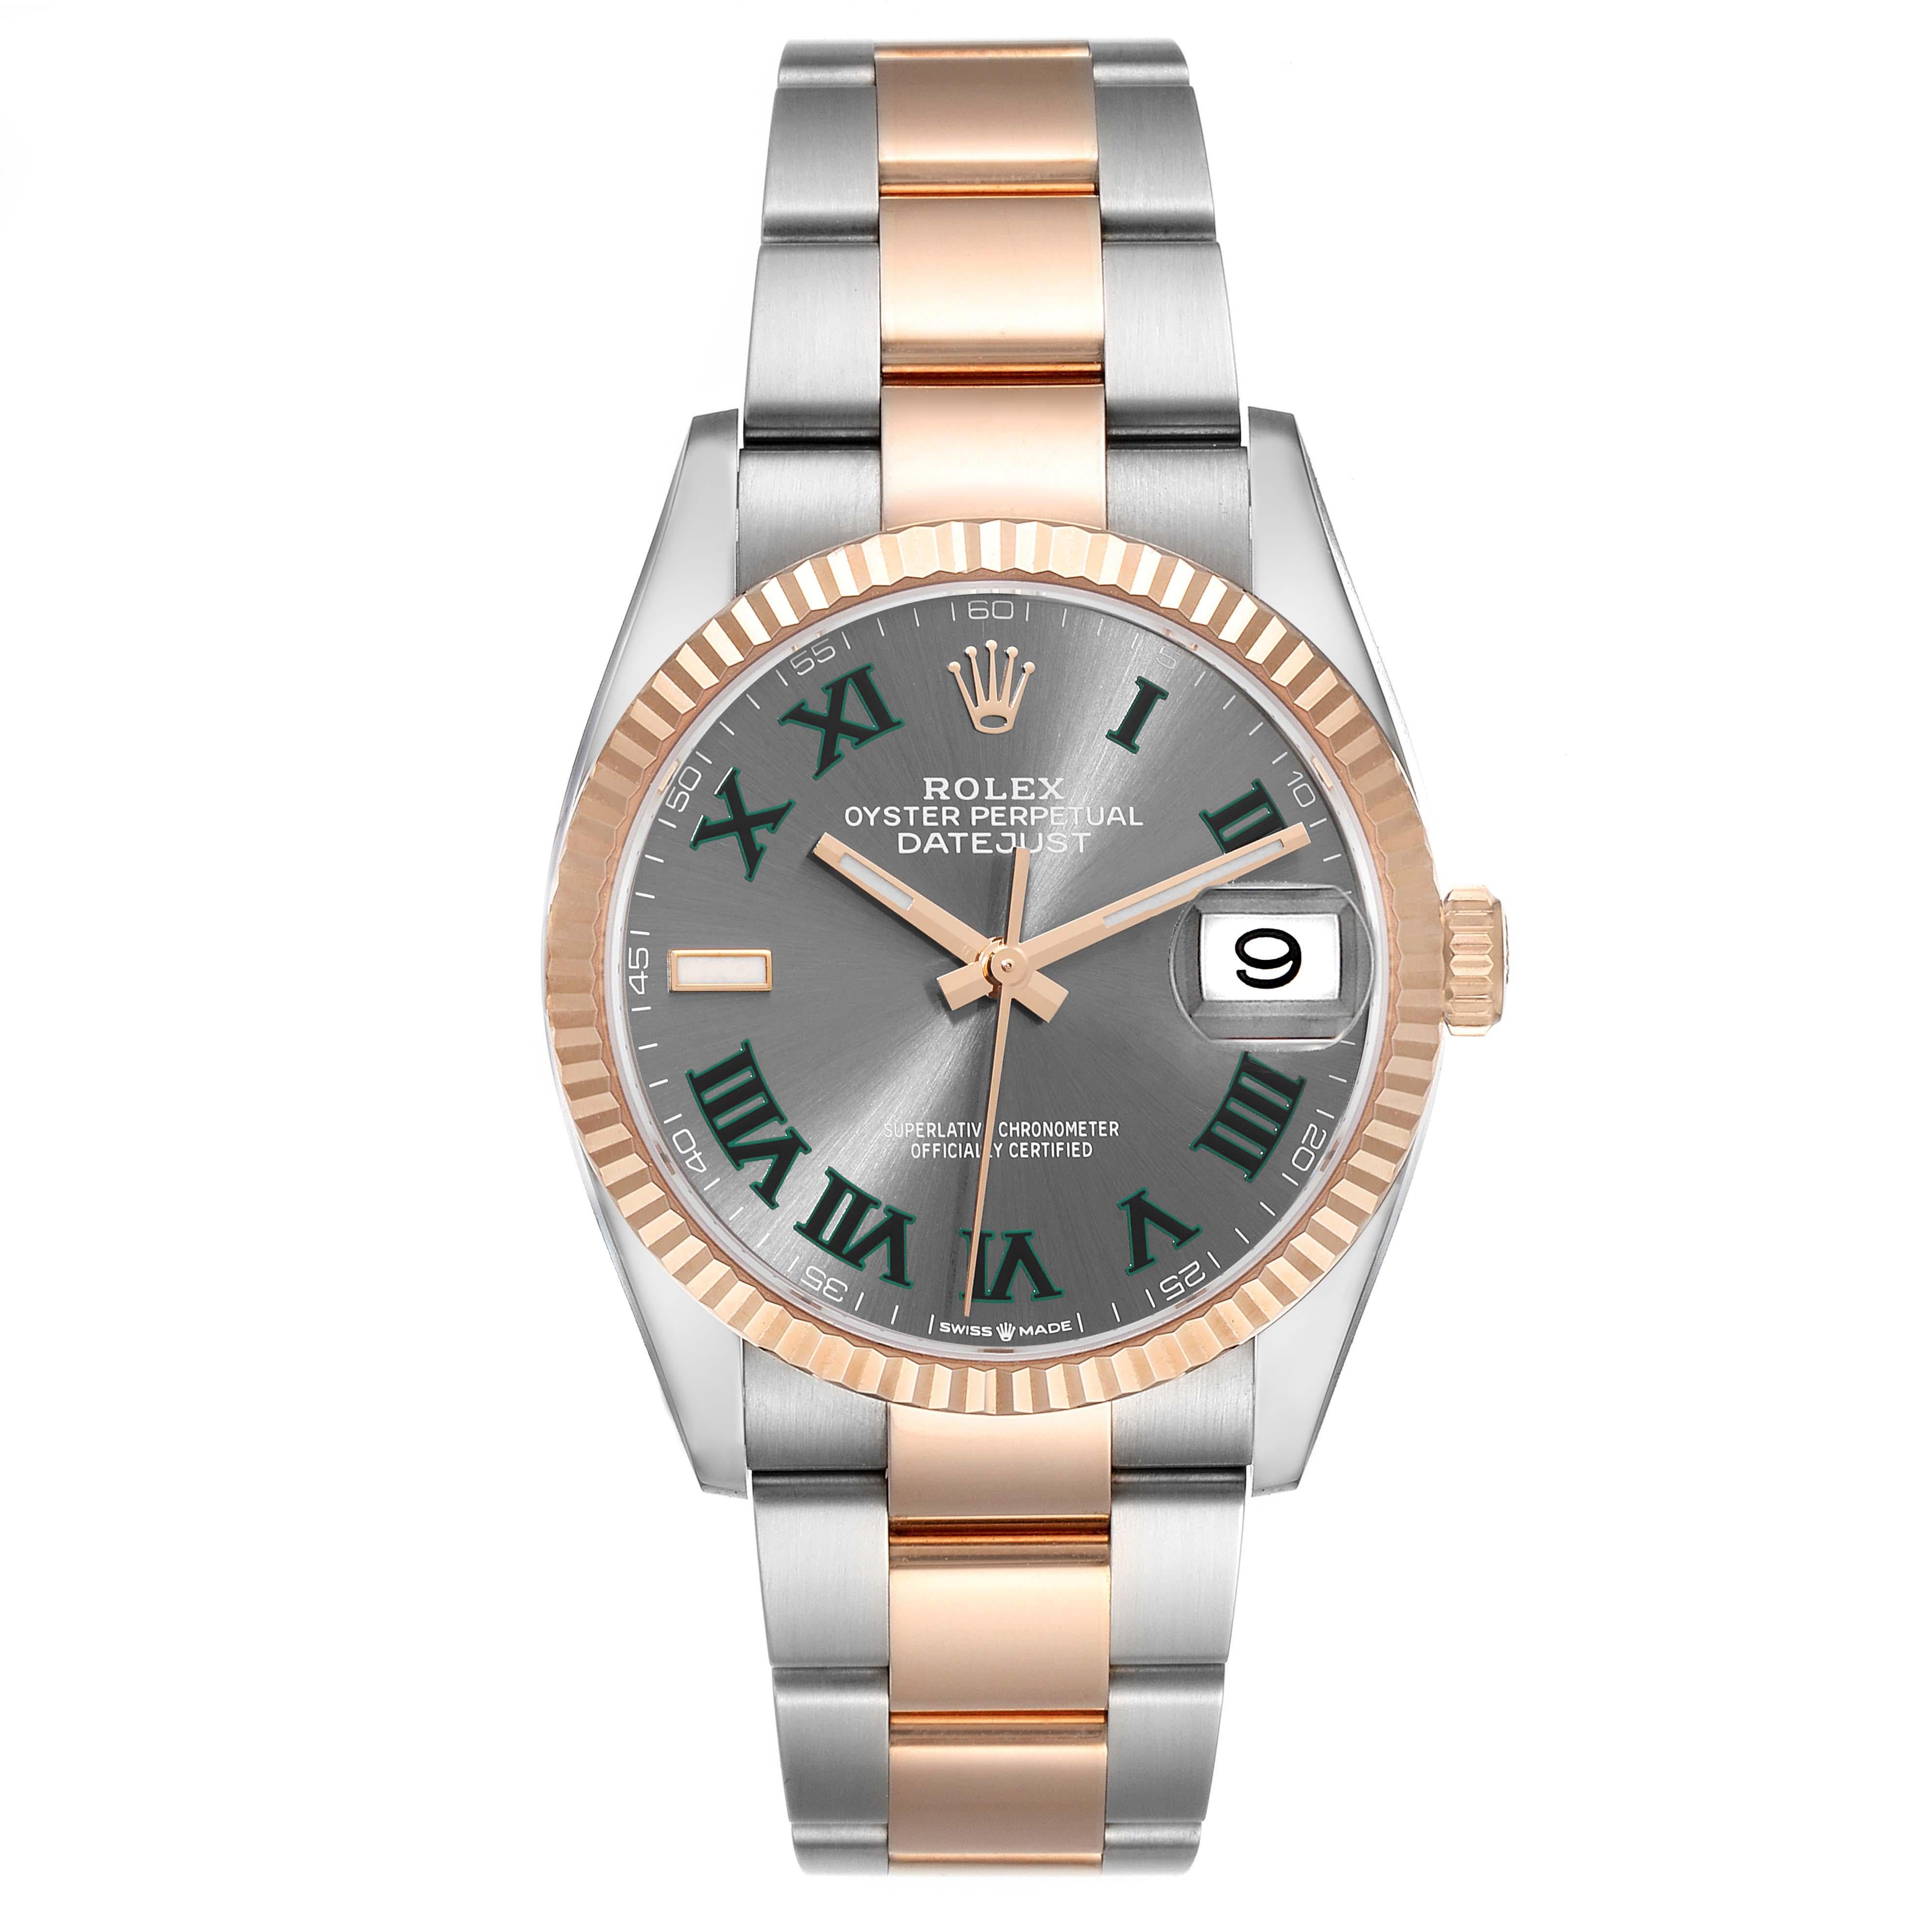 Rolex Datejust Wimbledon Dial Steel Rose Gold Mens Watch 126231 Unworn. Mouvement automatique à remontage automatique, officiellement certifié chronomètre. Boîtier en acier inoxydable de 36.0 mm de diamètre. Cosses hautement polies. Logo Rolex sur